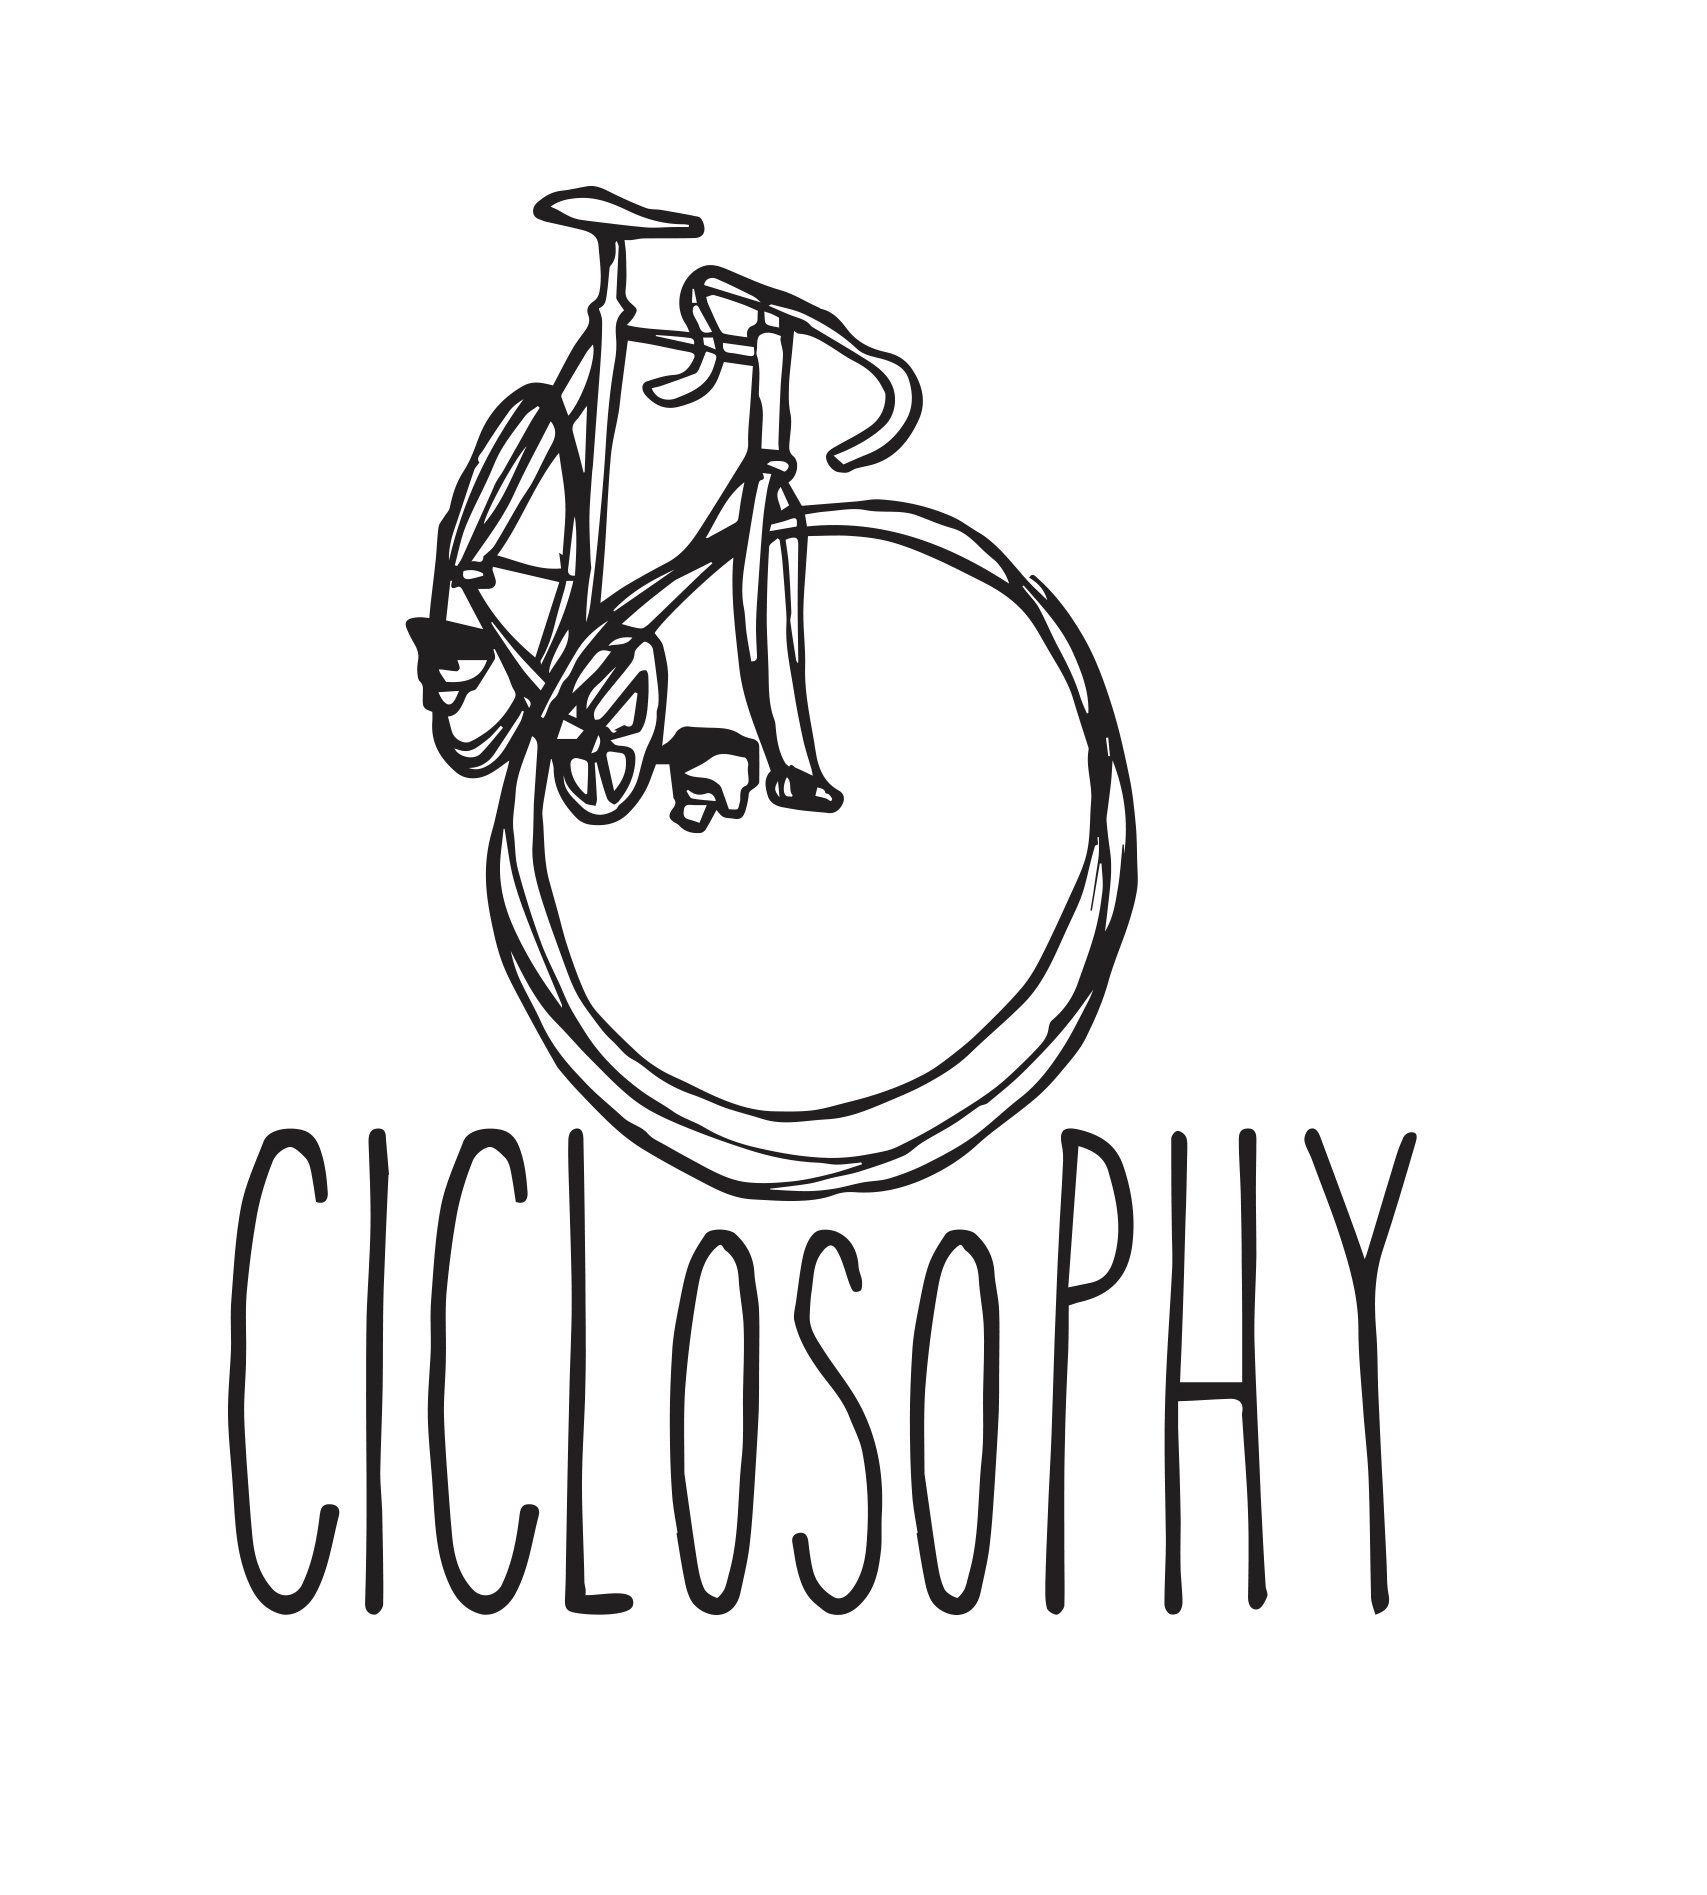 Ciclosophy nasce con la missione di promuovere il turismo in bicicletta, fornendo supporto ed informazioni utili a tutti i cicloviaggiatori. info@ciclosophy.com